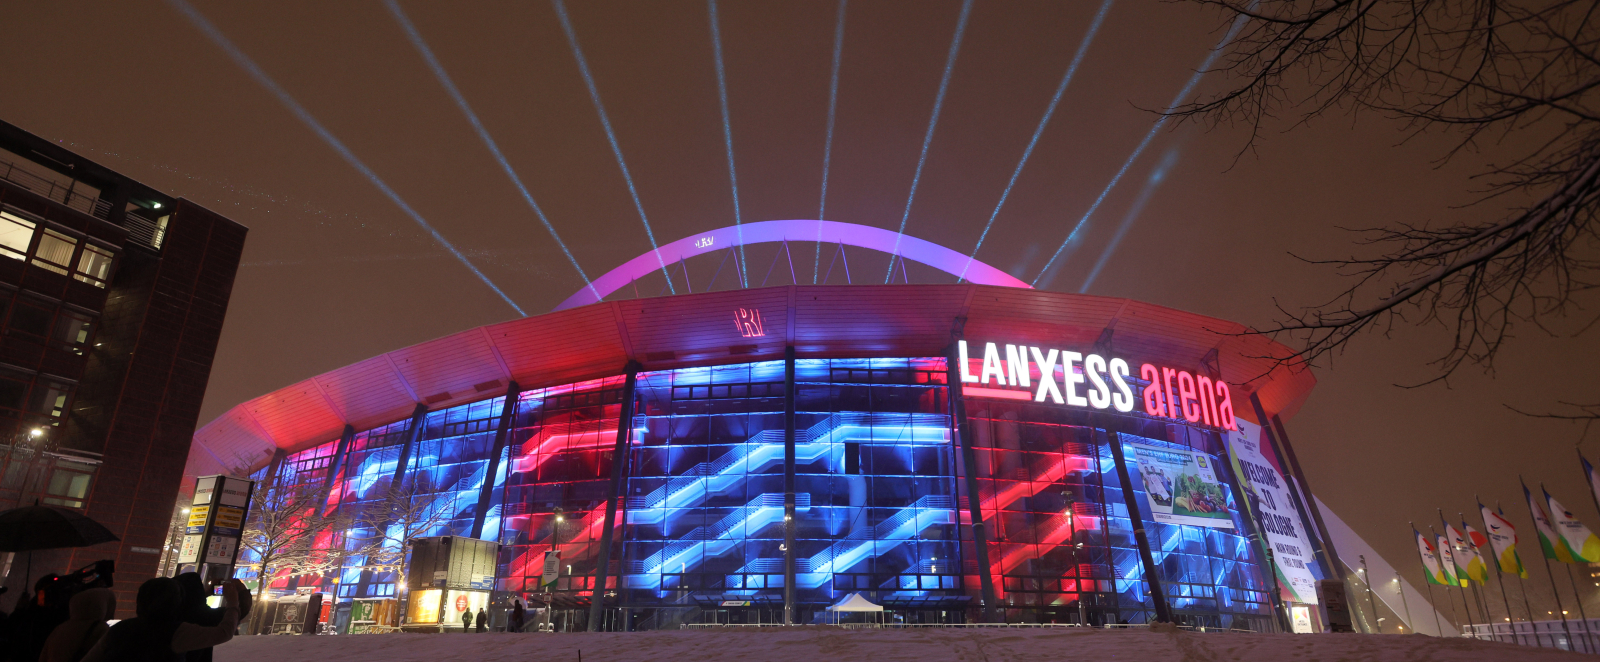 Illuminierte Lanxess arena